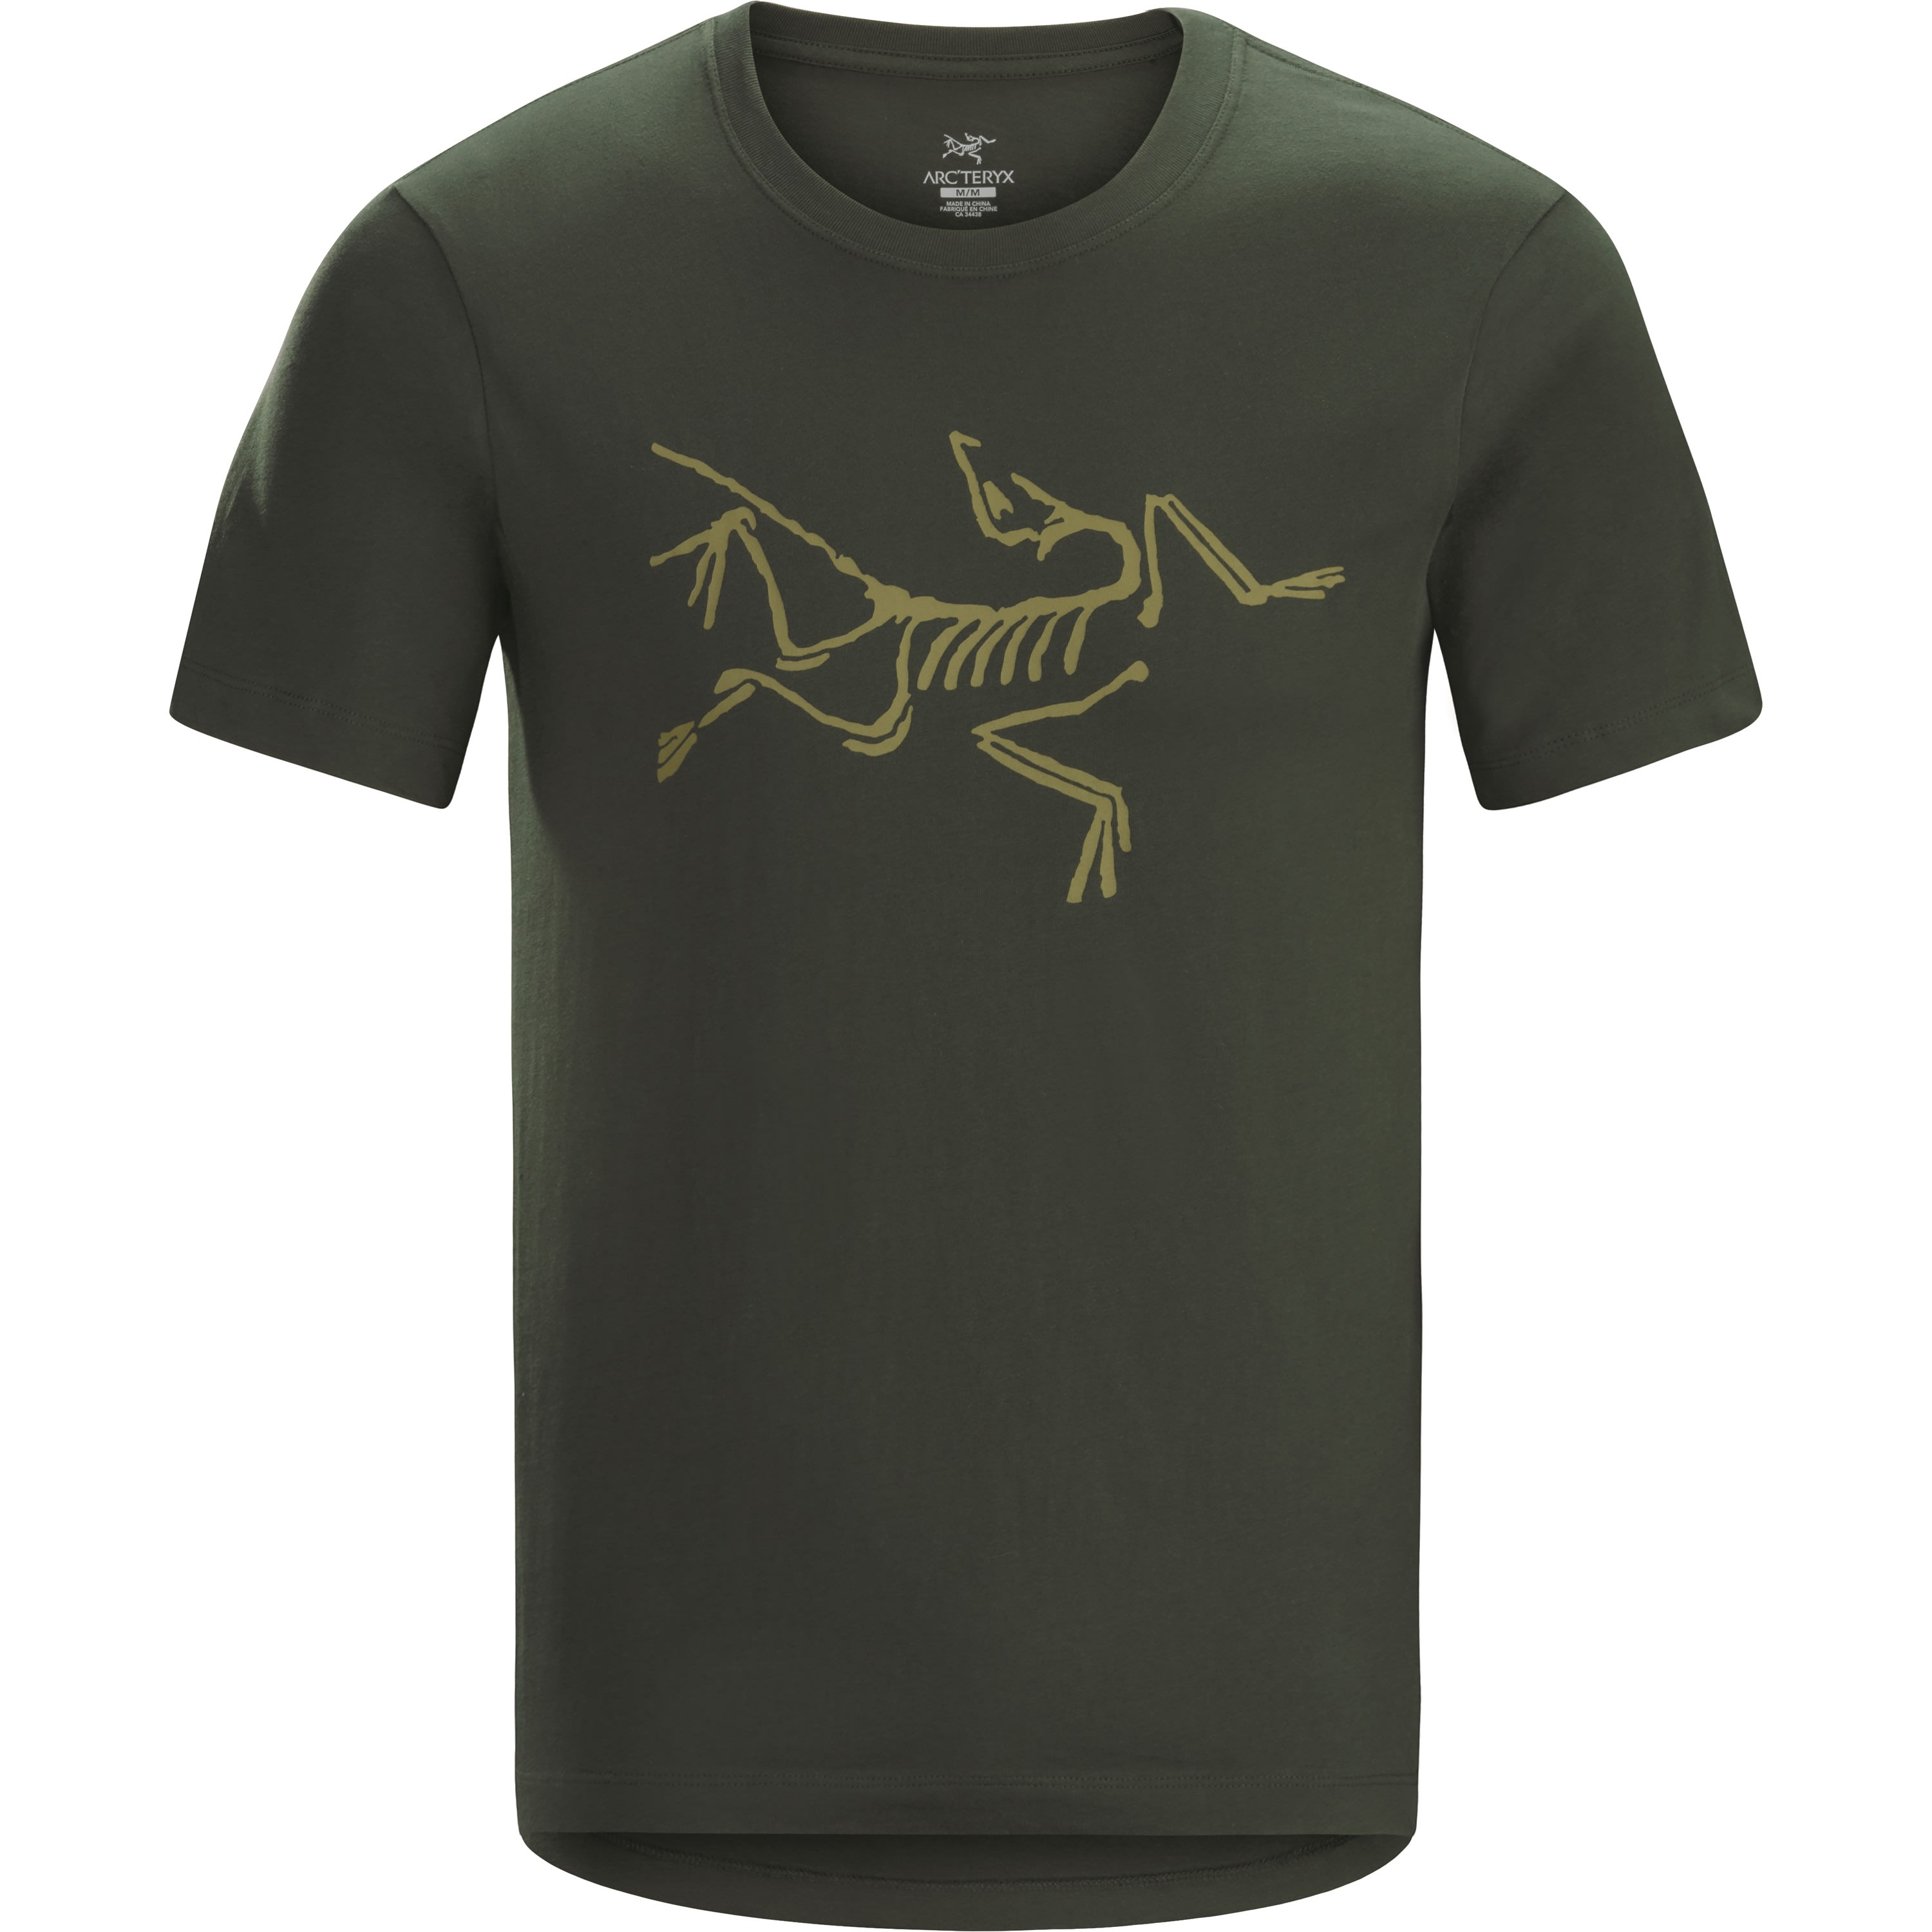 Kauf Arc'teryx Archaeopteryx Ss T-shirt Men's bei Outnorth